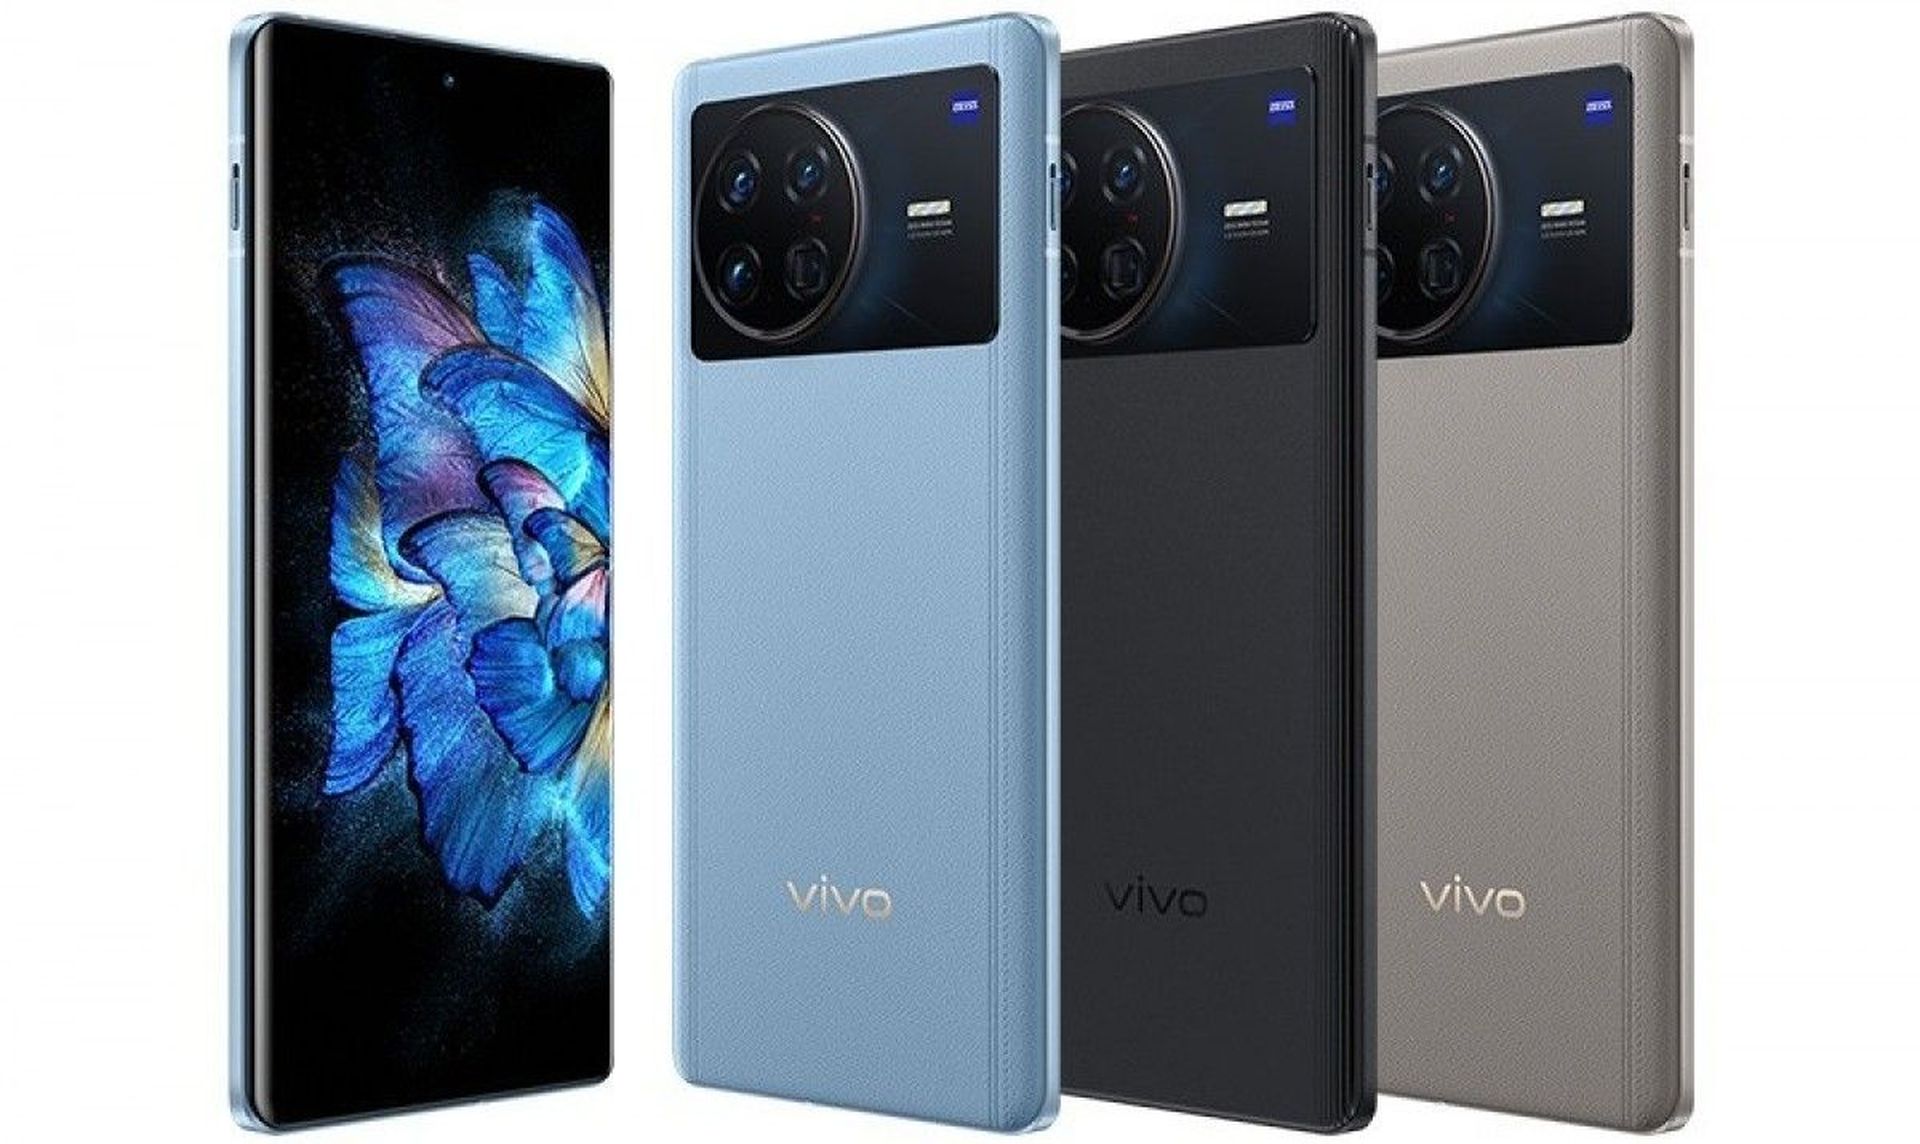 Rehber: Vivo telefonlarda uygulamaları gizleme